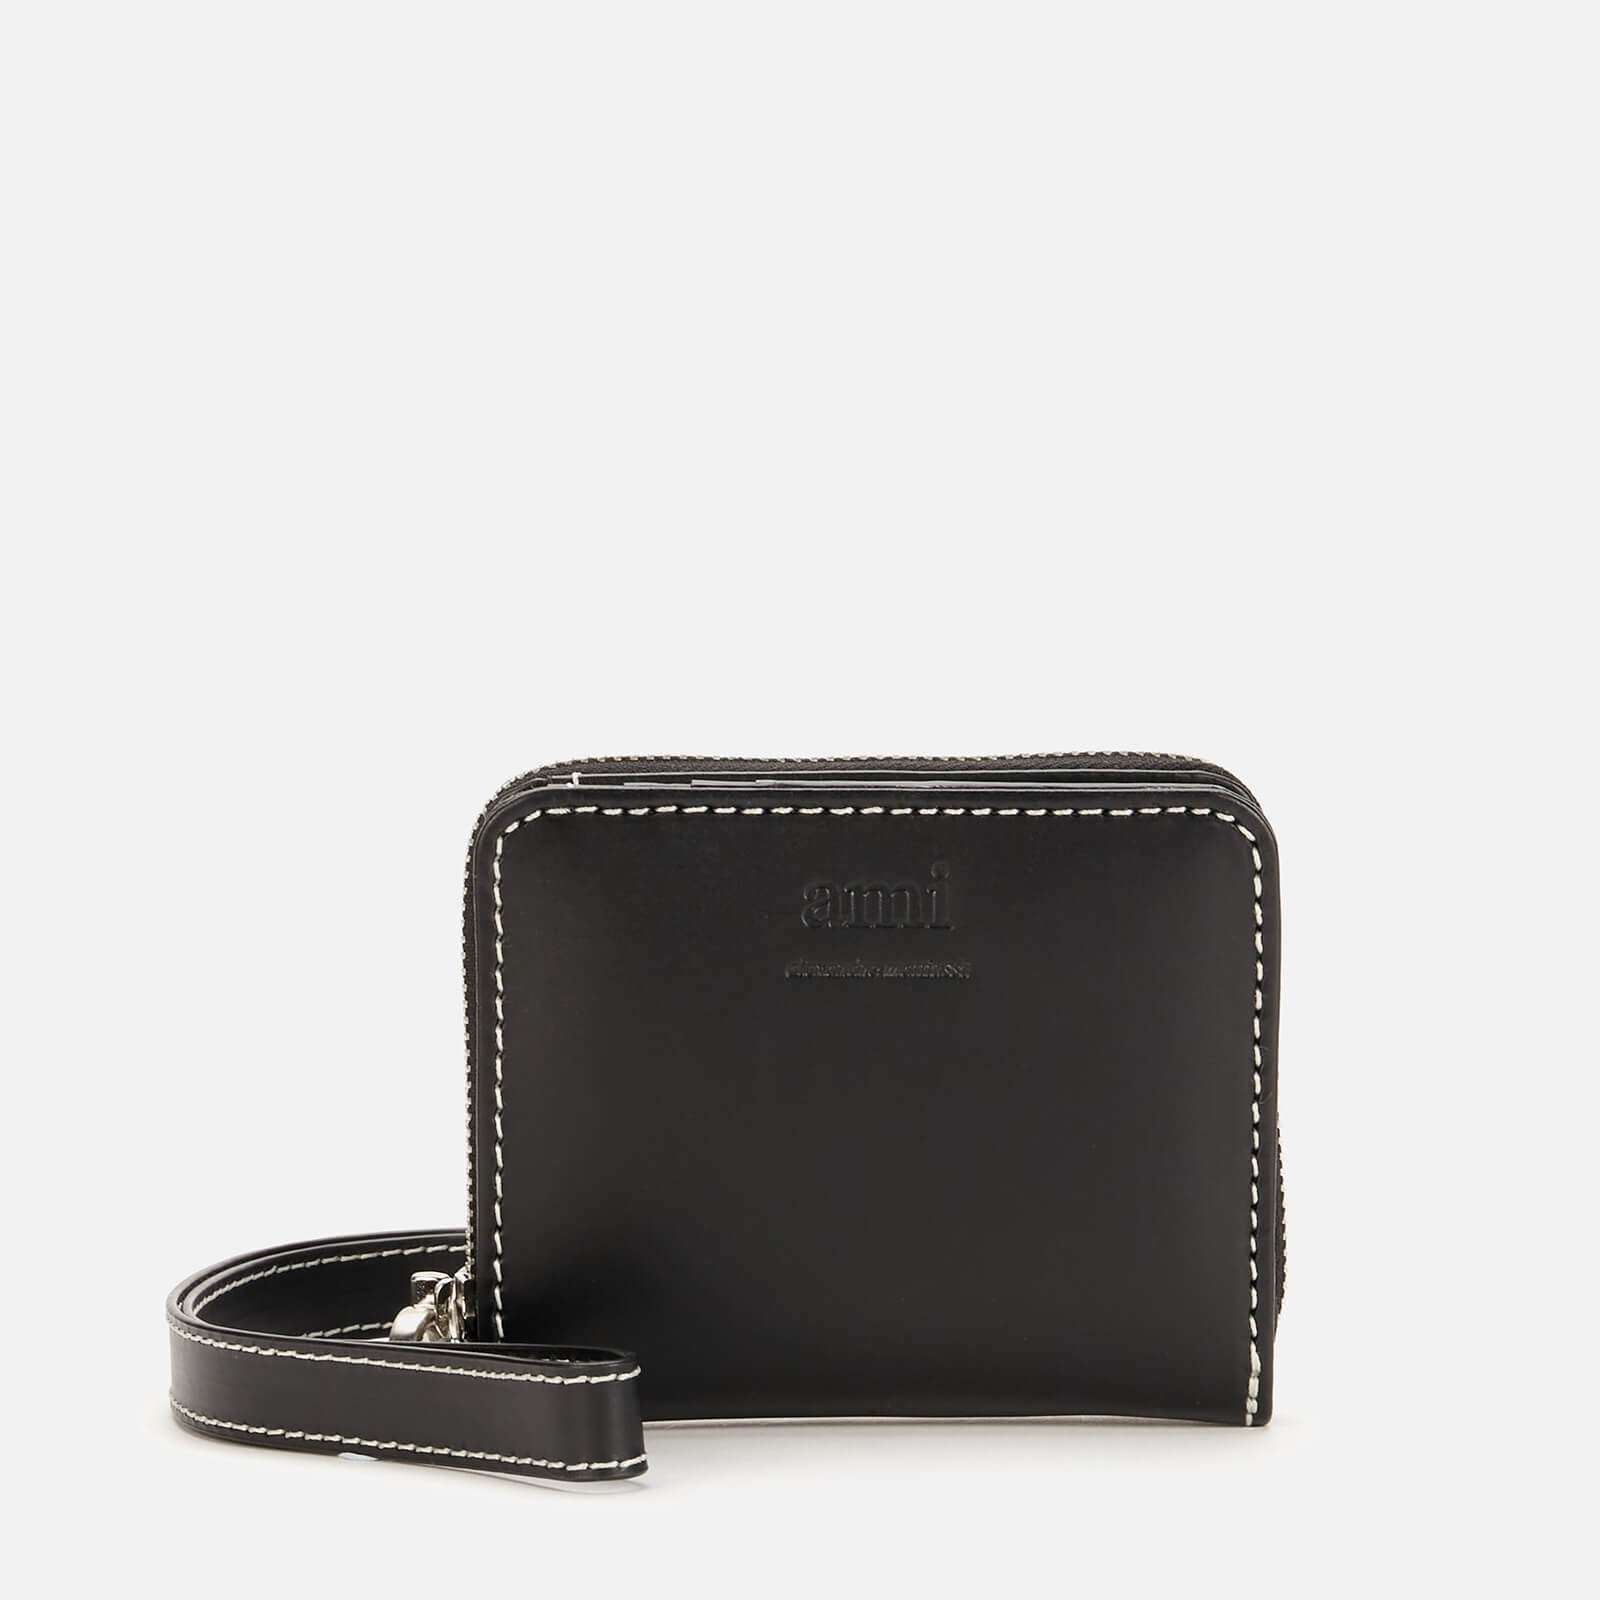 AMI Men's Compact Wallet - Black